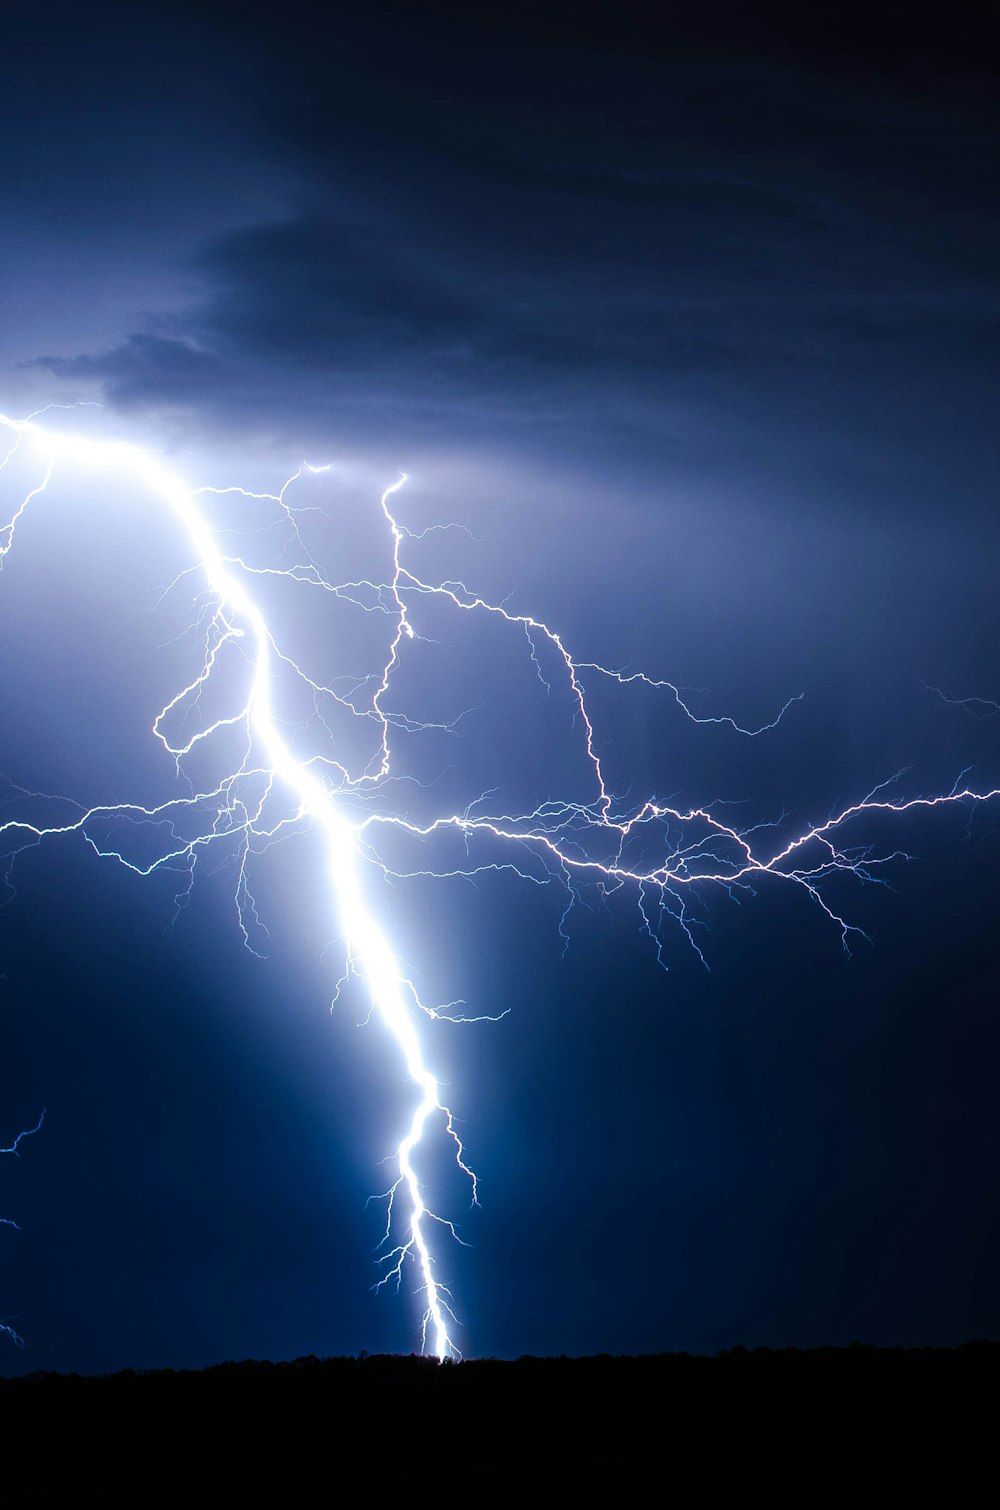 lightning strike during blue sky photo – Free Nature Image on Unsplash